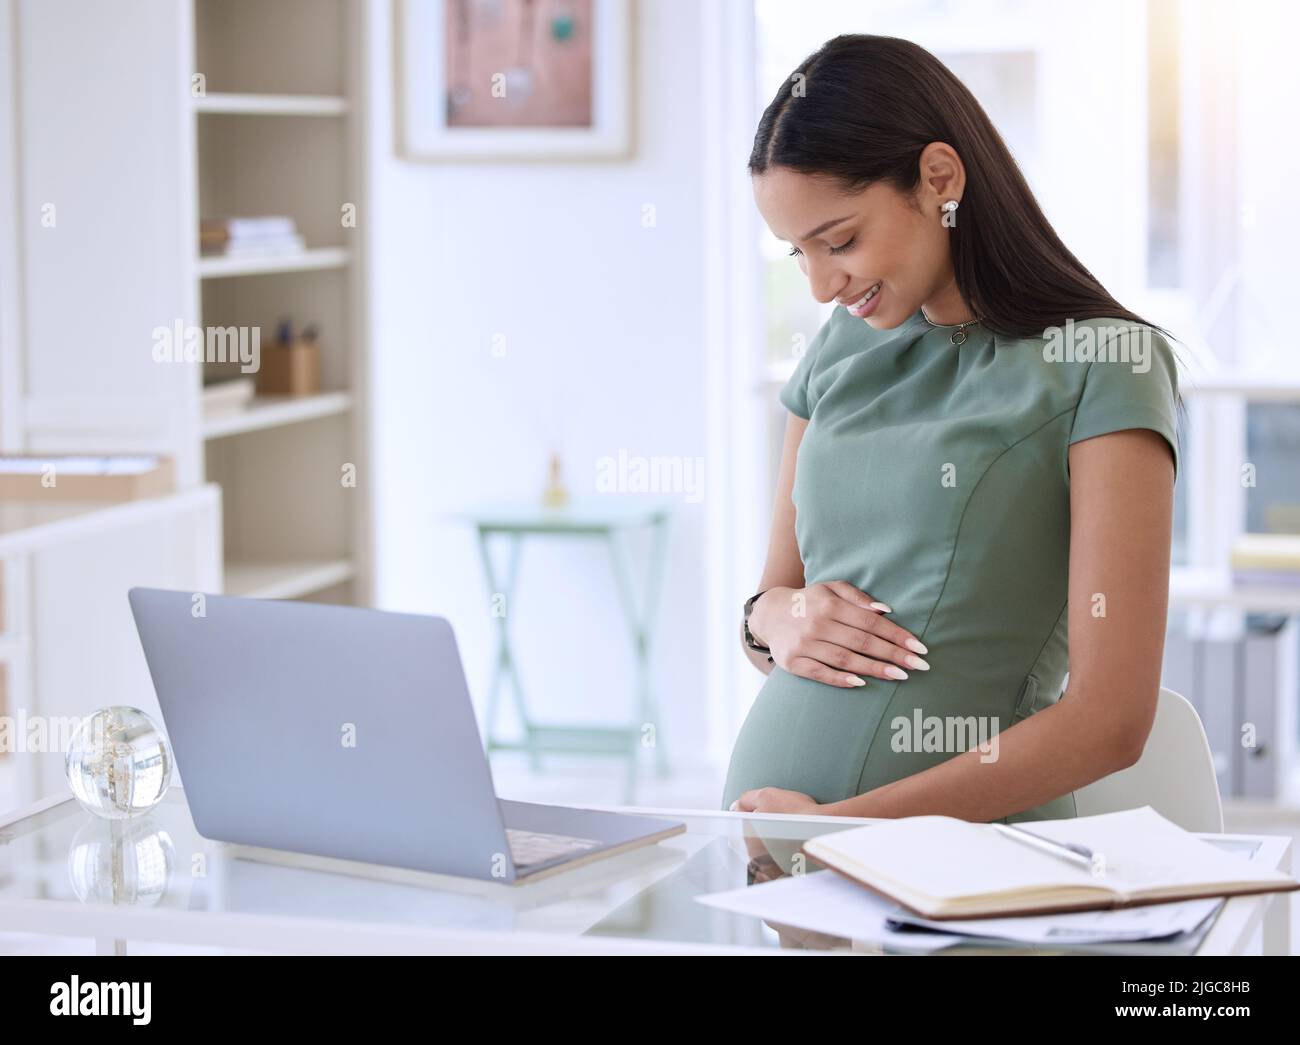 Je peux sentir que vous vous déplacez ici. Une jeune femme d'affaires enceinte assise seule dans le bureau et se frottant le ventre. Banque D'Images